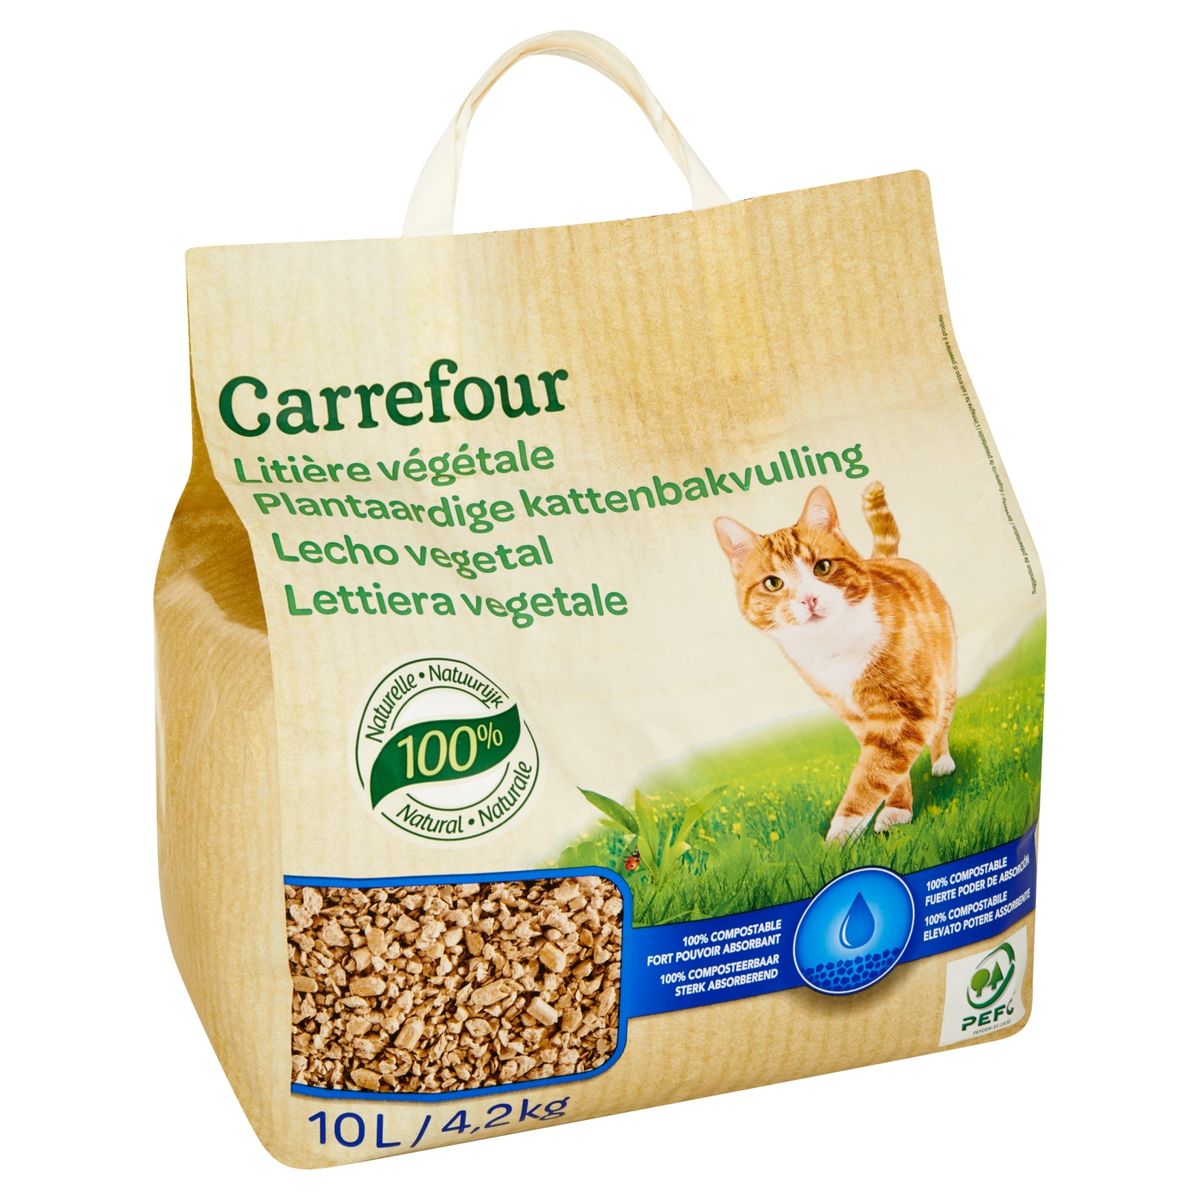 Carrefour Litière Végétale 4.2 kg